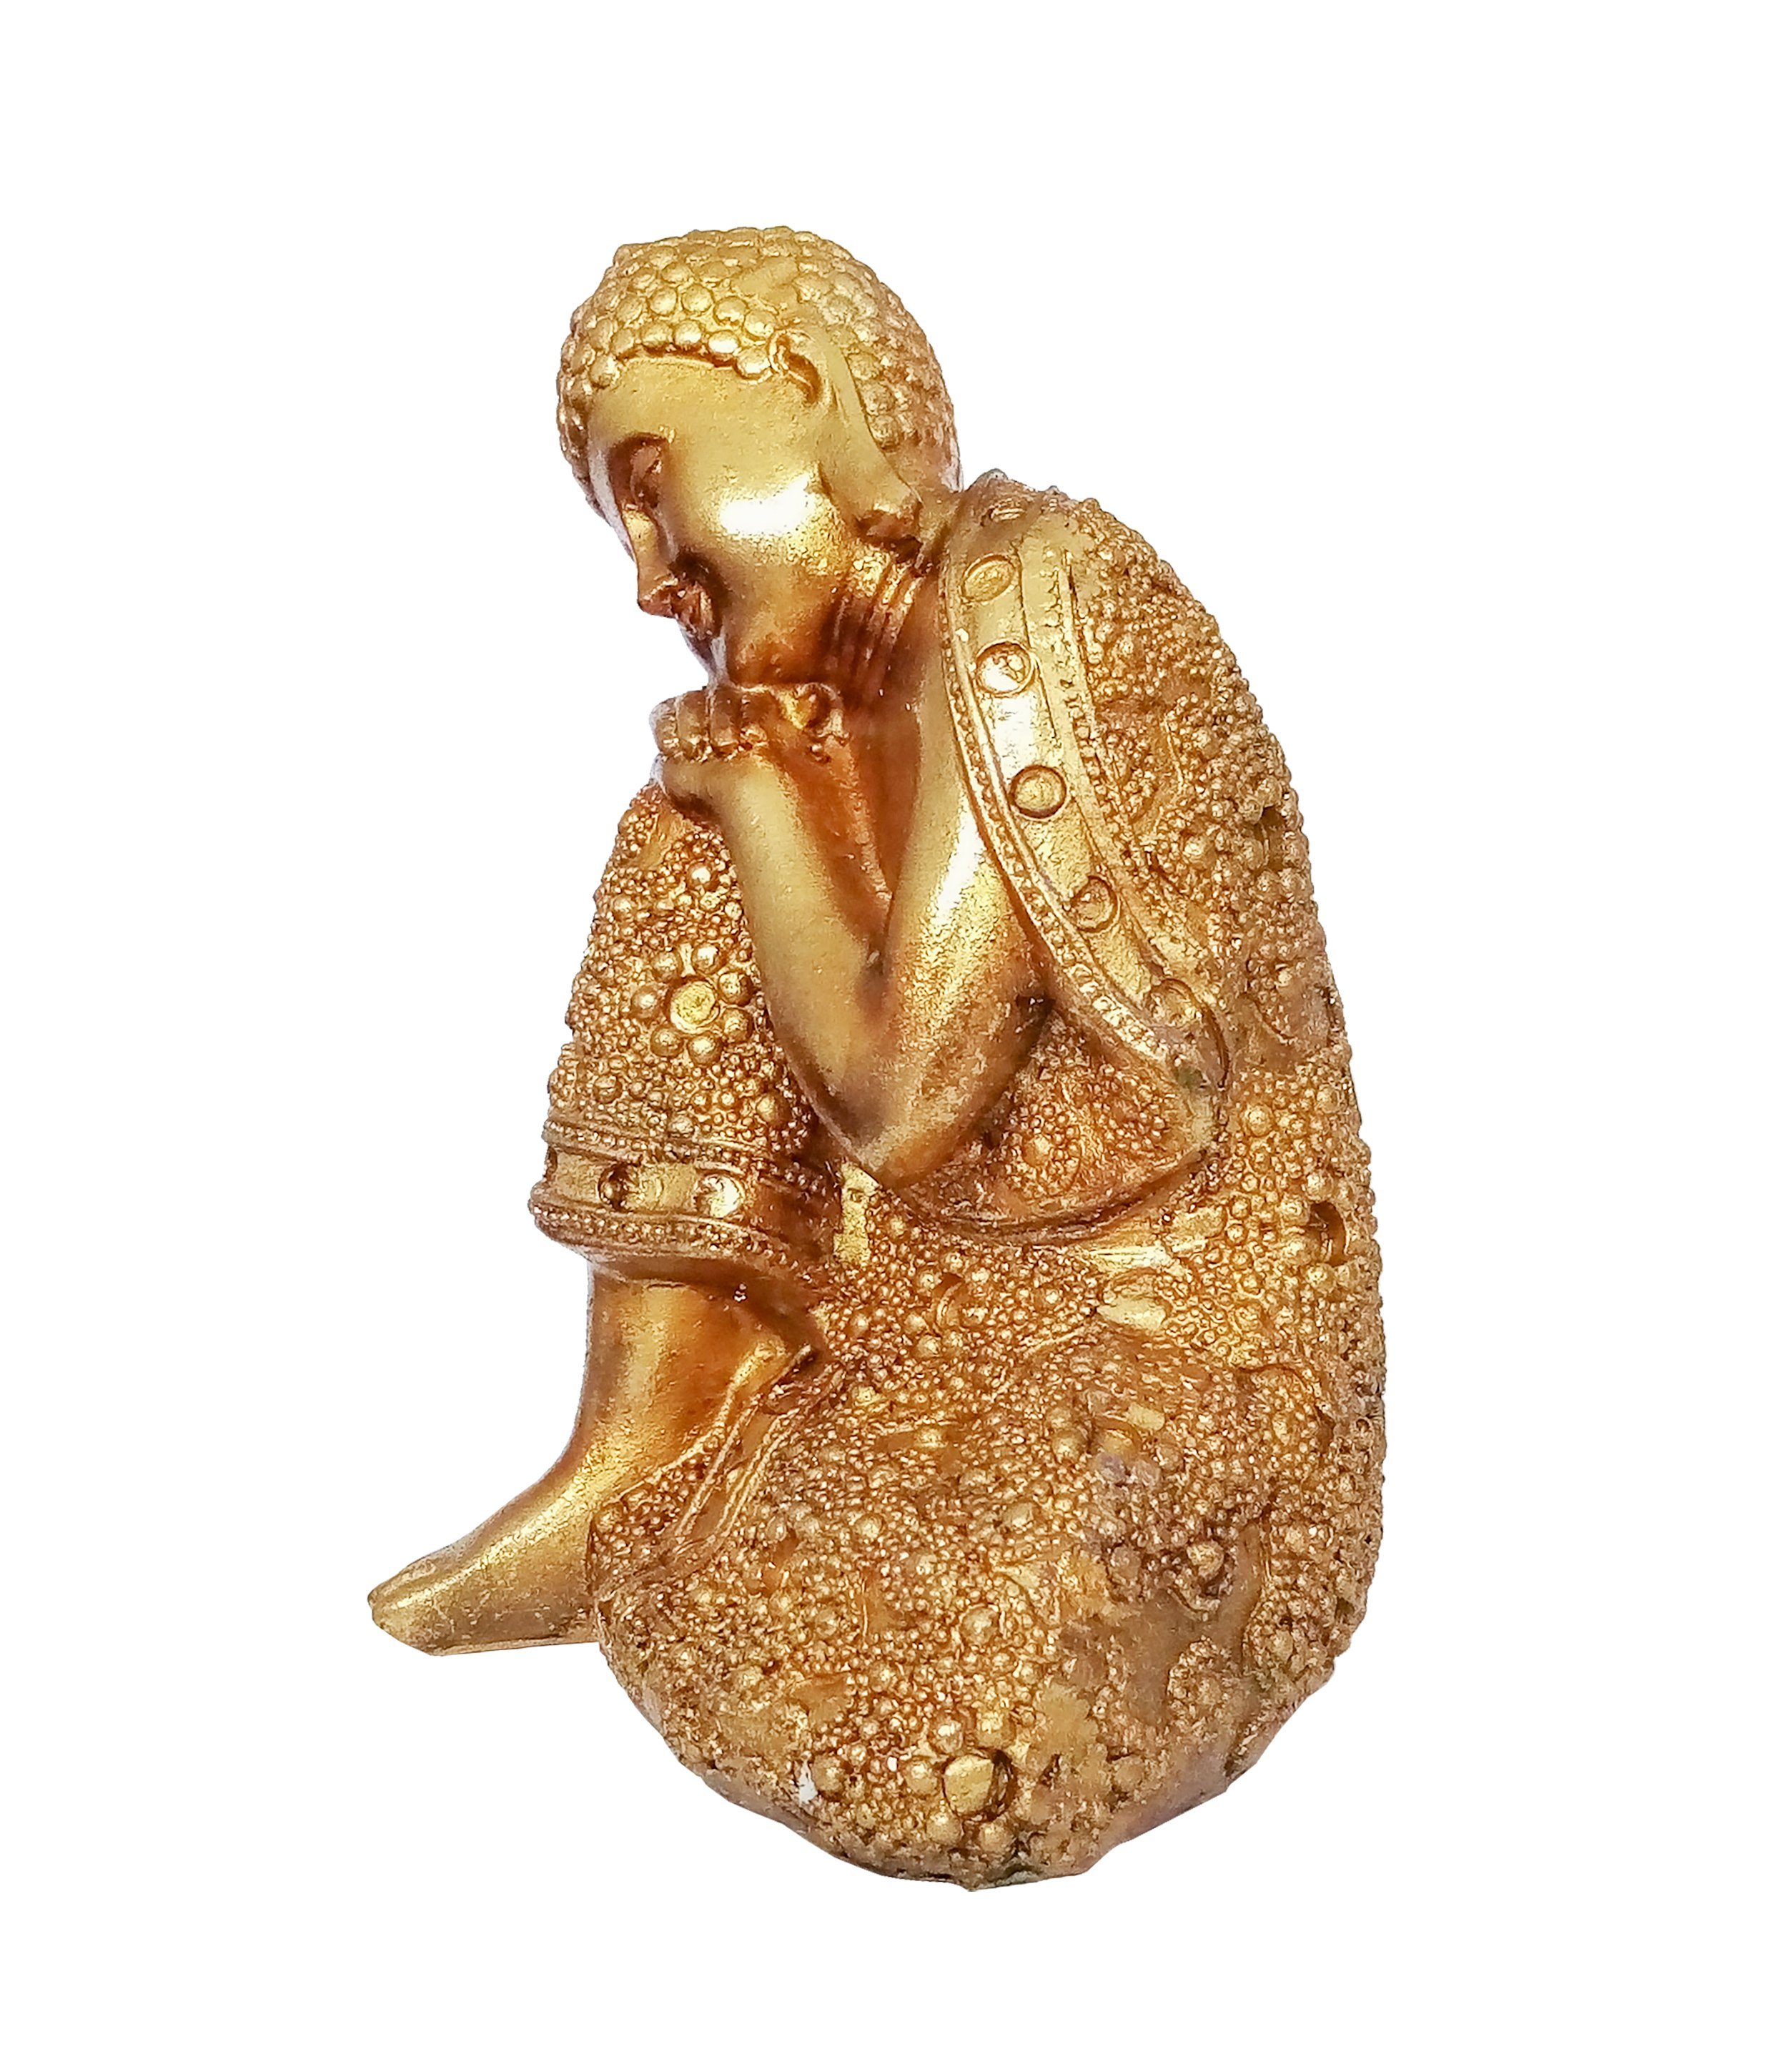 Giftdecor Buddhafigur Buddha Figur Auf Deko Polyresin Shui Statue Knie Feng rechtes aus Decoration 12x16cm Garten 91 (auf Knie), Gold Budda Thai